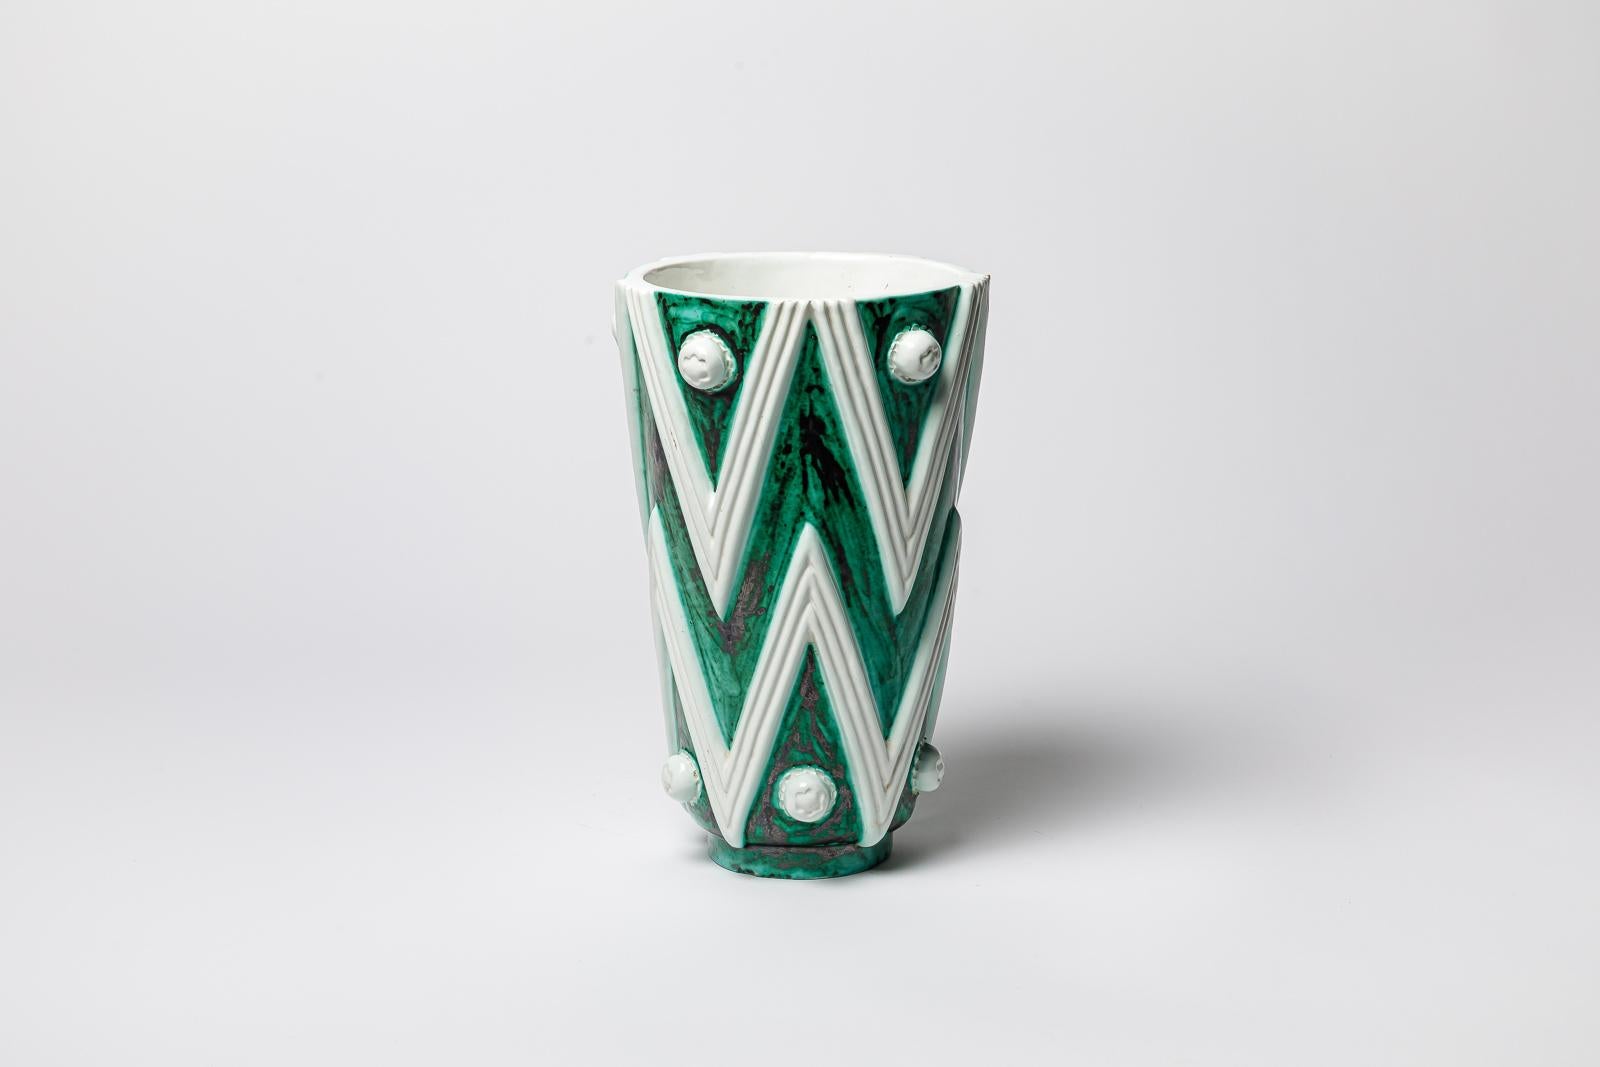 French Green and white glazed ceramic vase by Sainte Radegonde, circa 1960-1970.